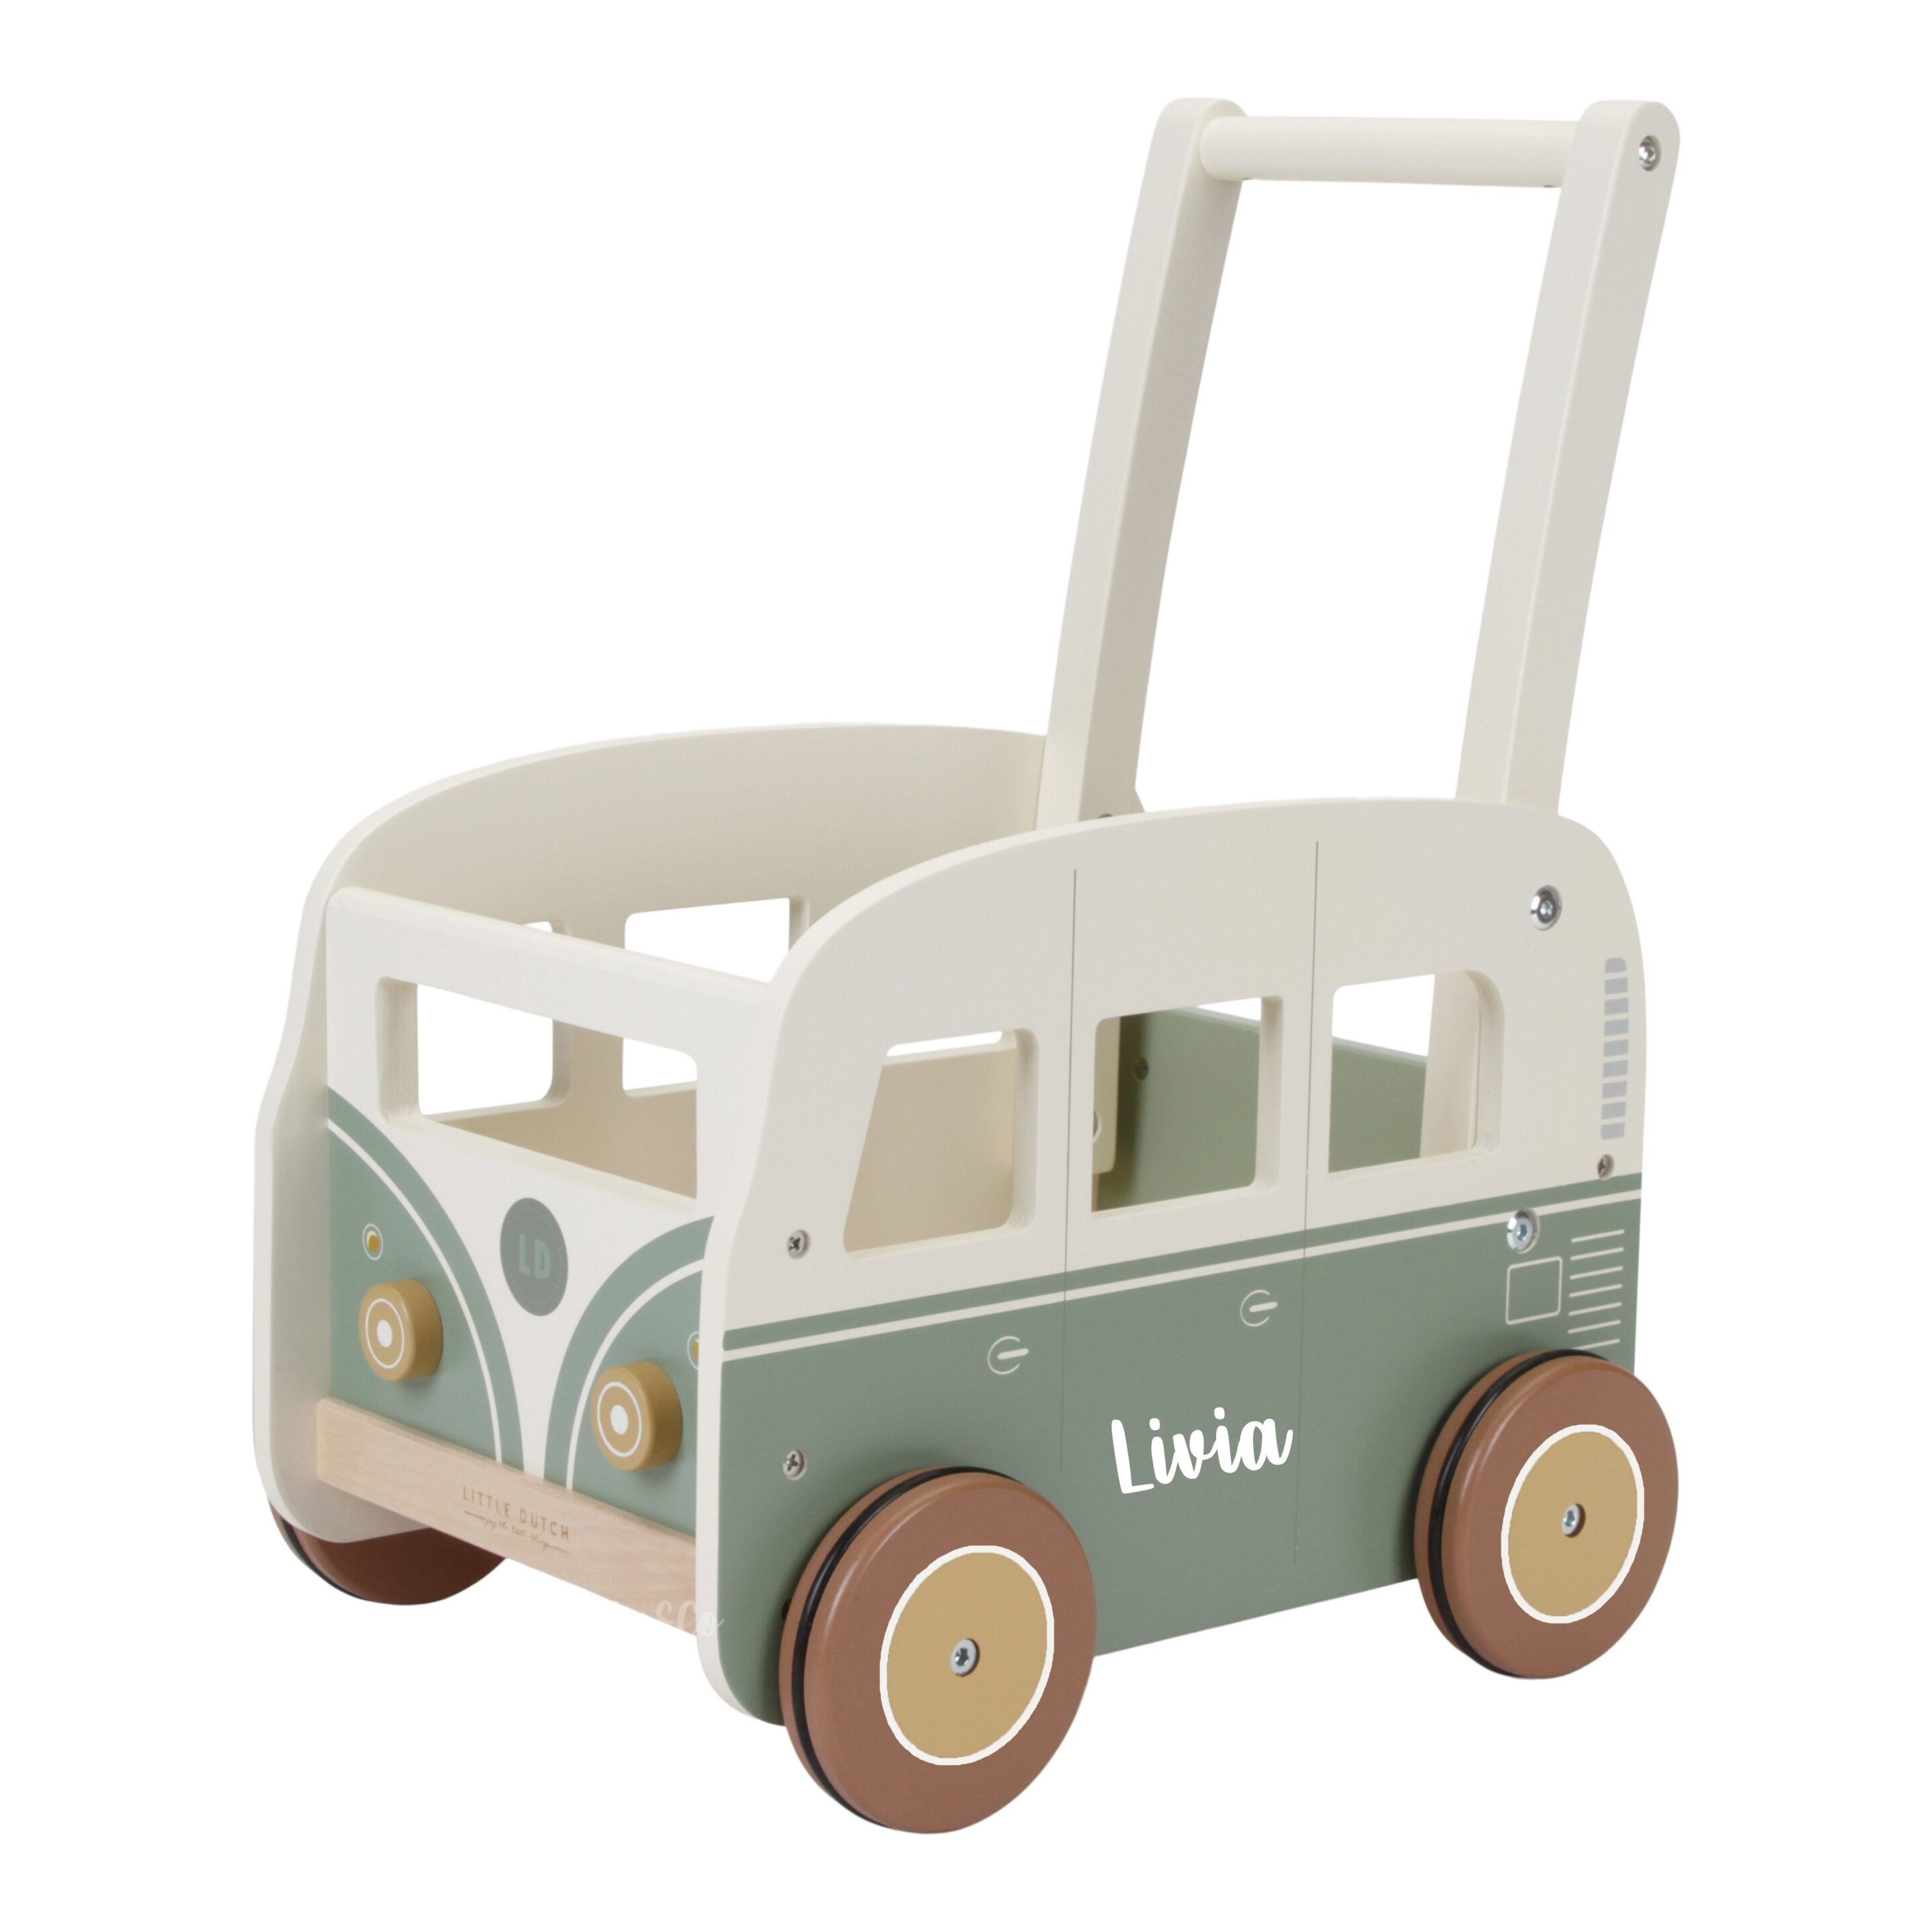 Little Vintage loopwagen met naam - Pieke-en-co Geboortecadeaus